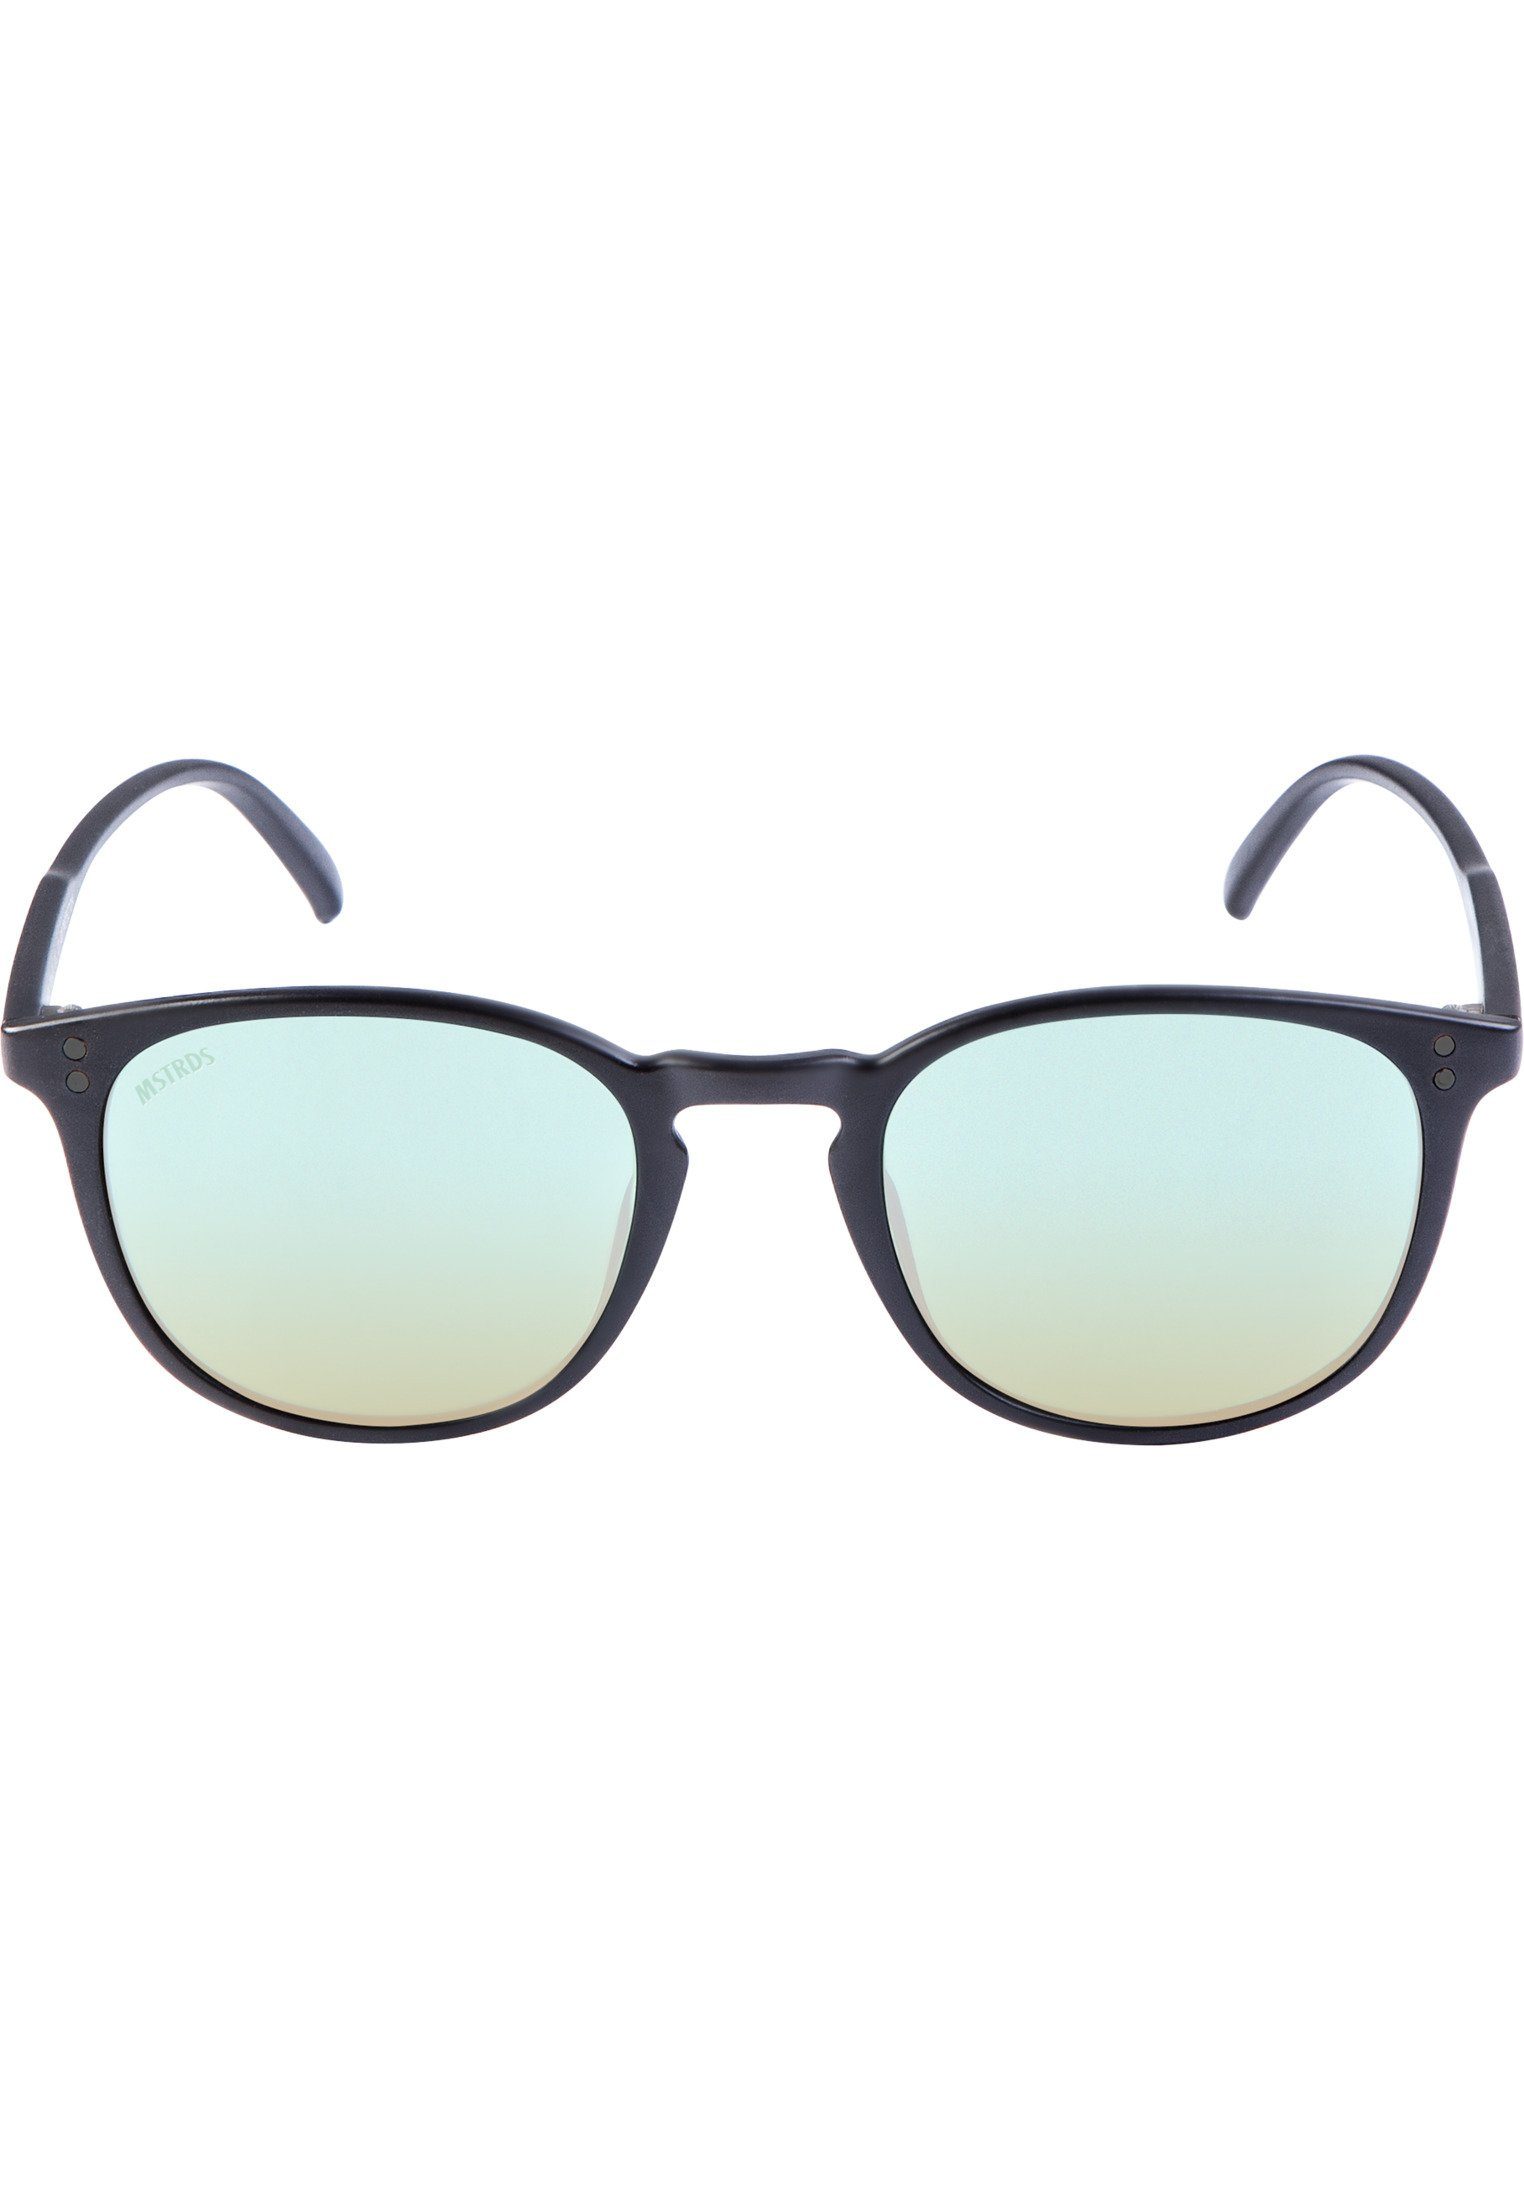 MSTRDS Sonnenbrille Accessoires Sunglasses Arthur Youth blk/blue